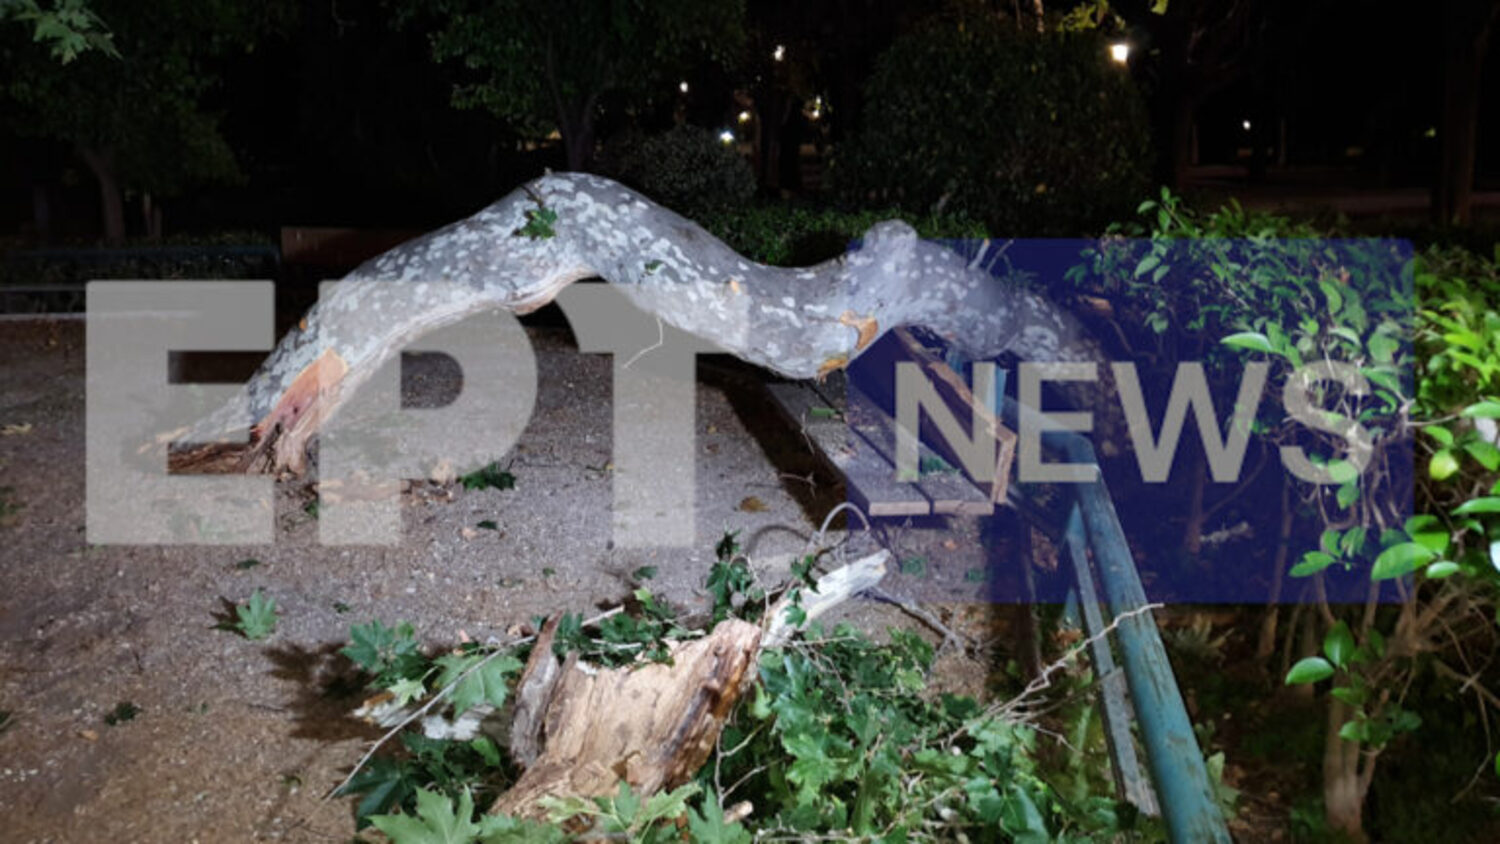 Ατύχημα στο Ζάππειο: «Γεγονός που οφείλεται σε απρόοπτο συμβάν της φύσης», σύμφωνα με ανακοίνωση